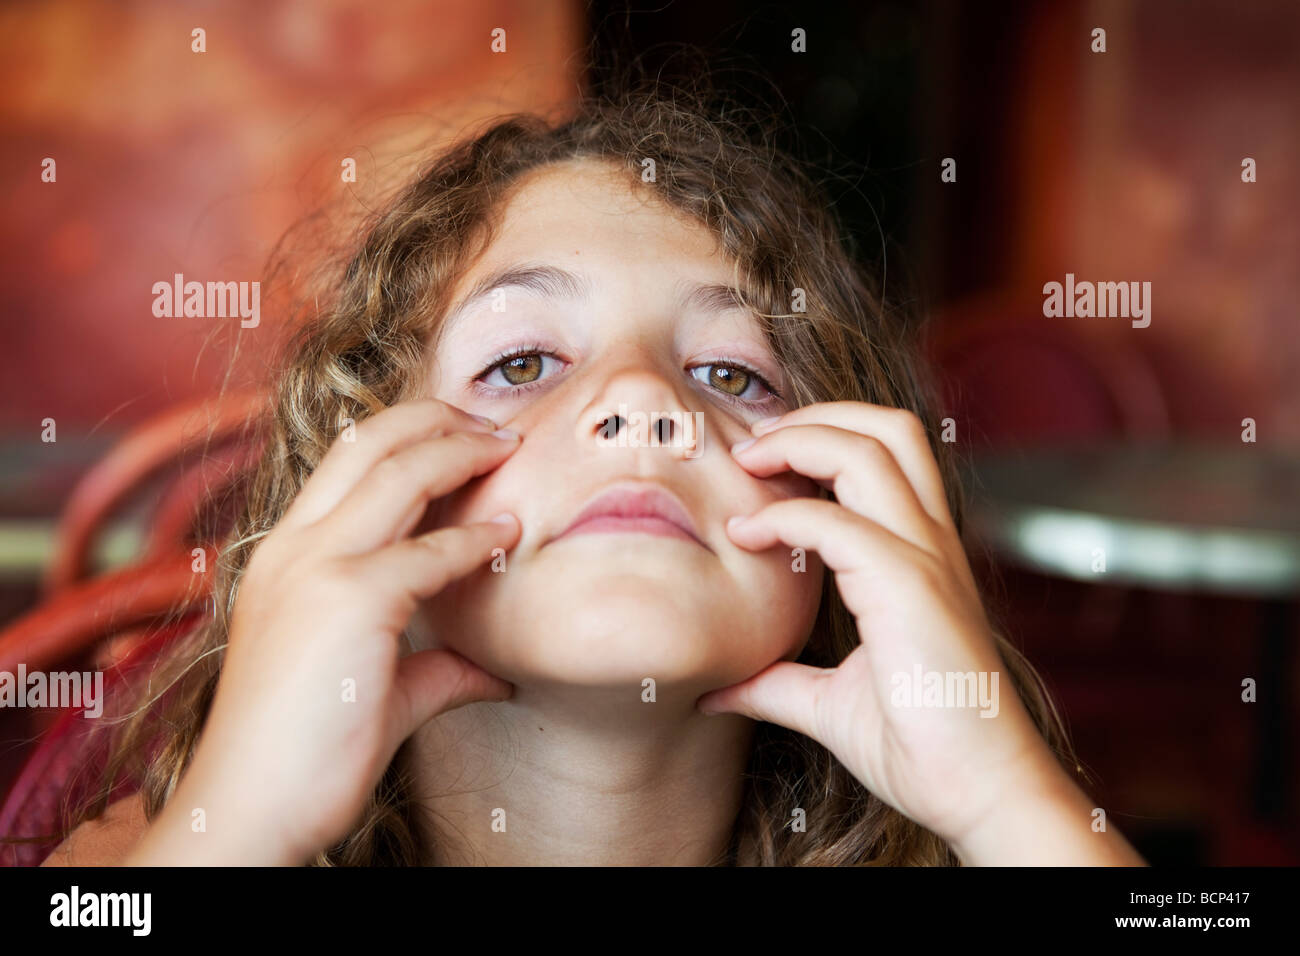 Caras feas fotografías e imágenes de alta resolución - Alamy